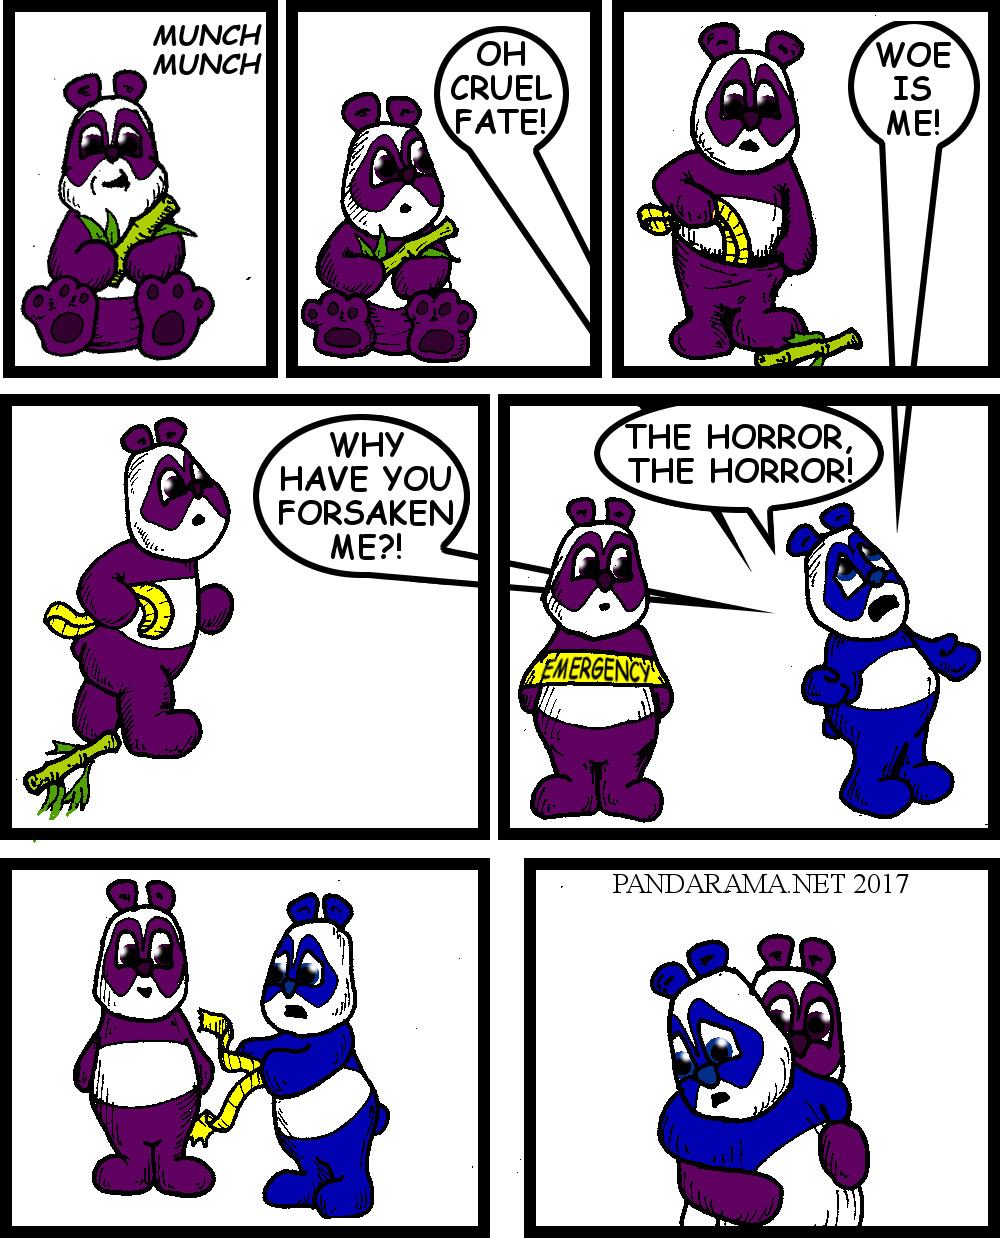 cartoon with panda bears hugging. panda webcomic. panda comicstrip. panda hug. lamentation.